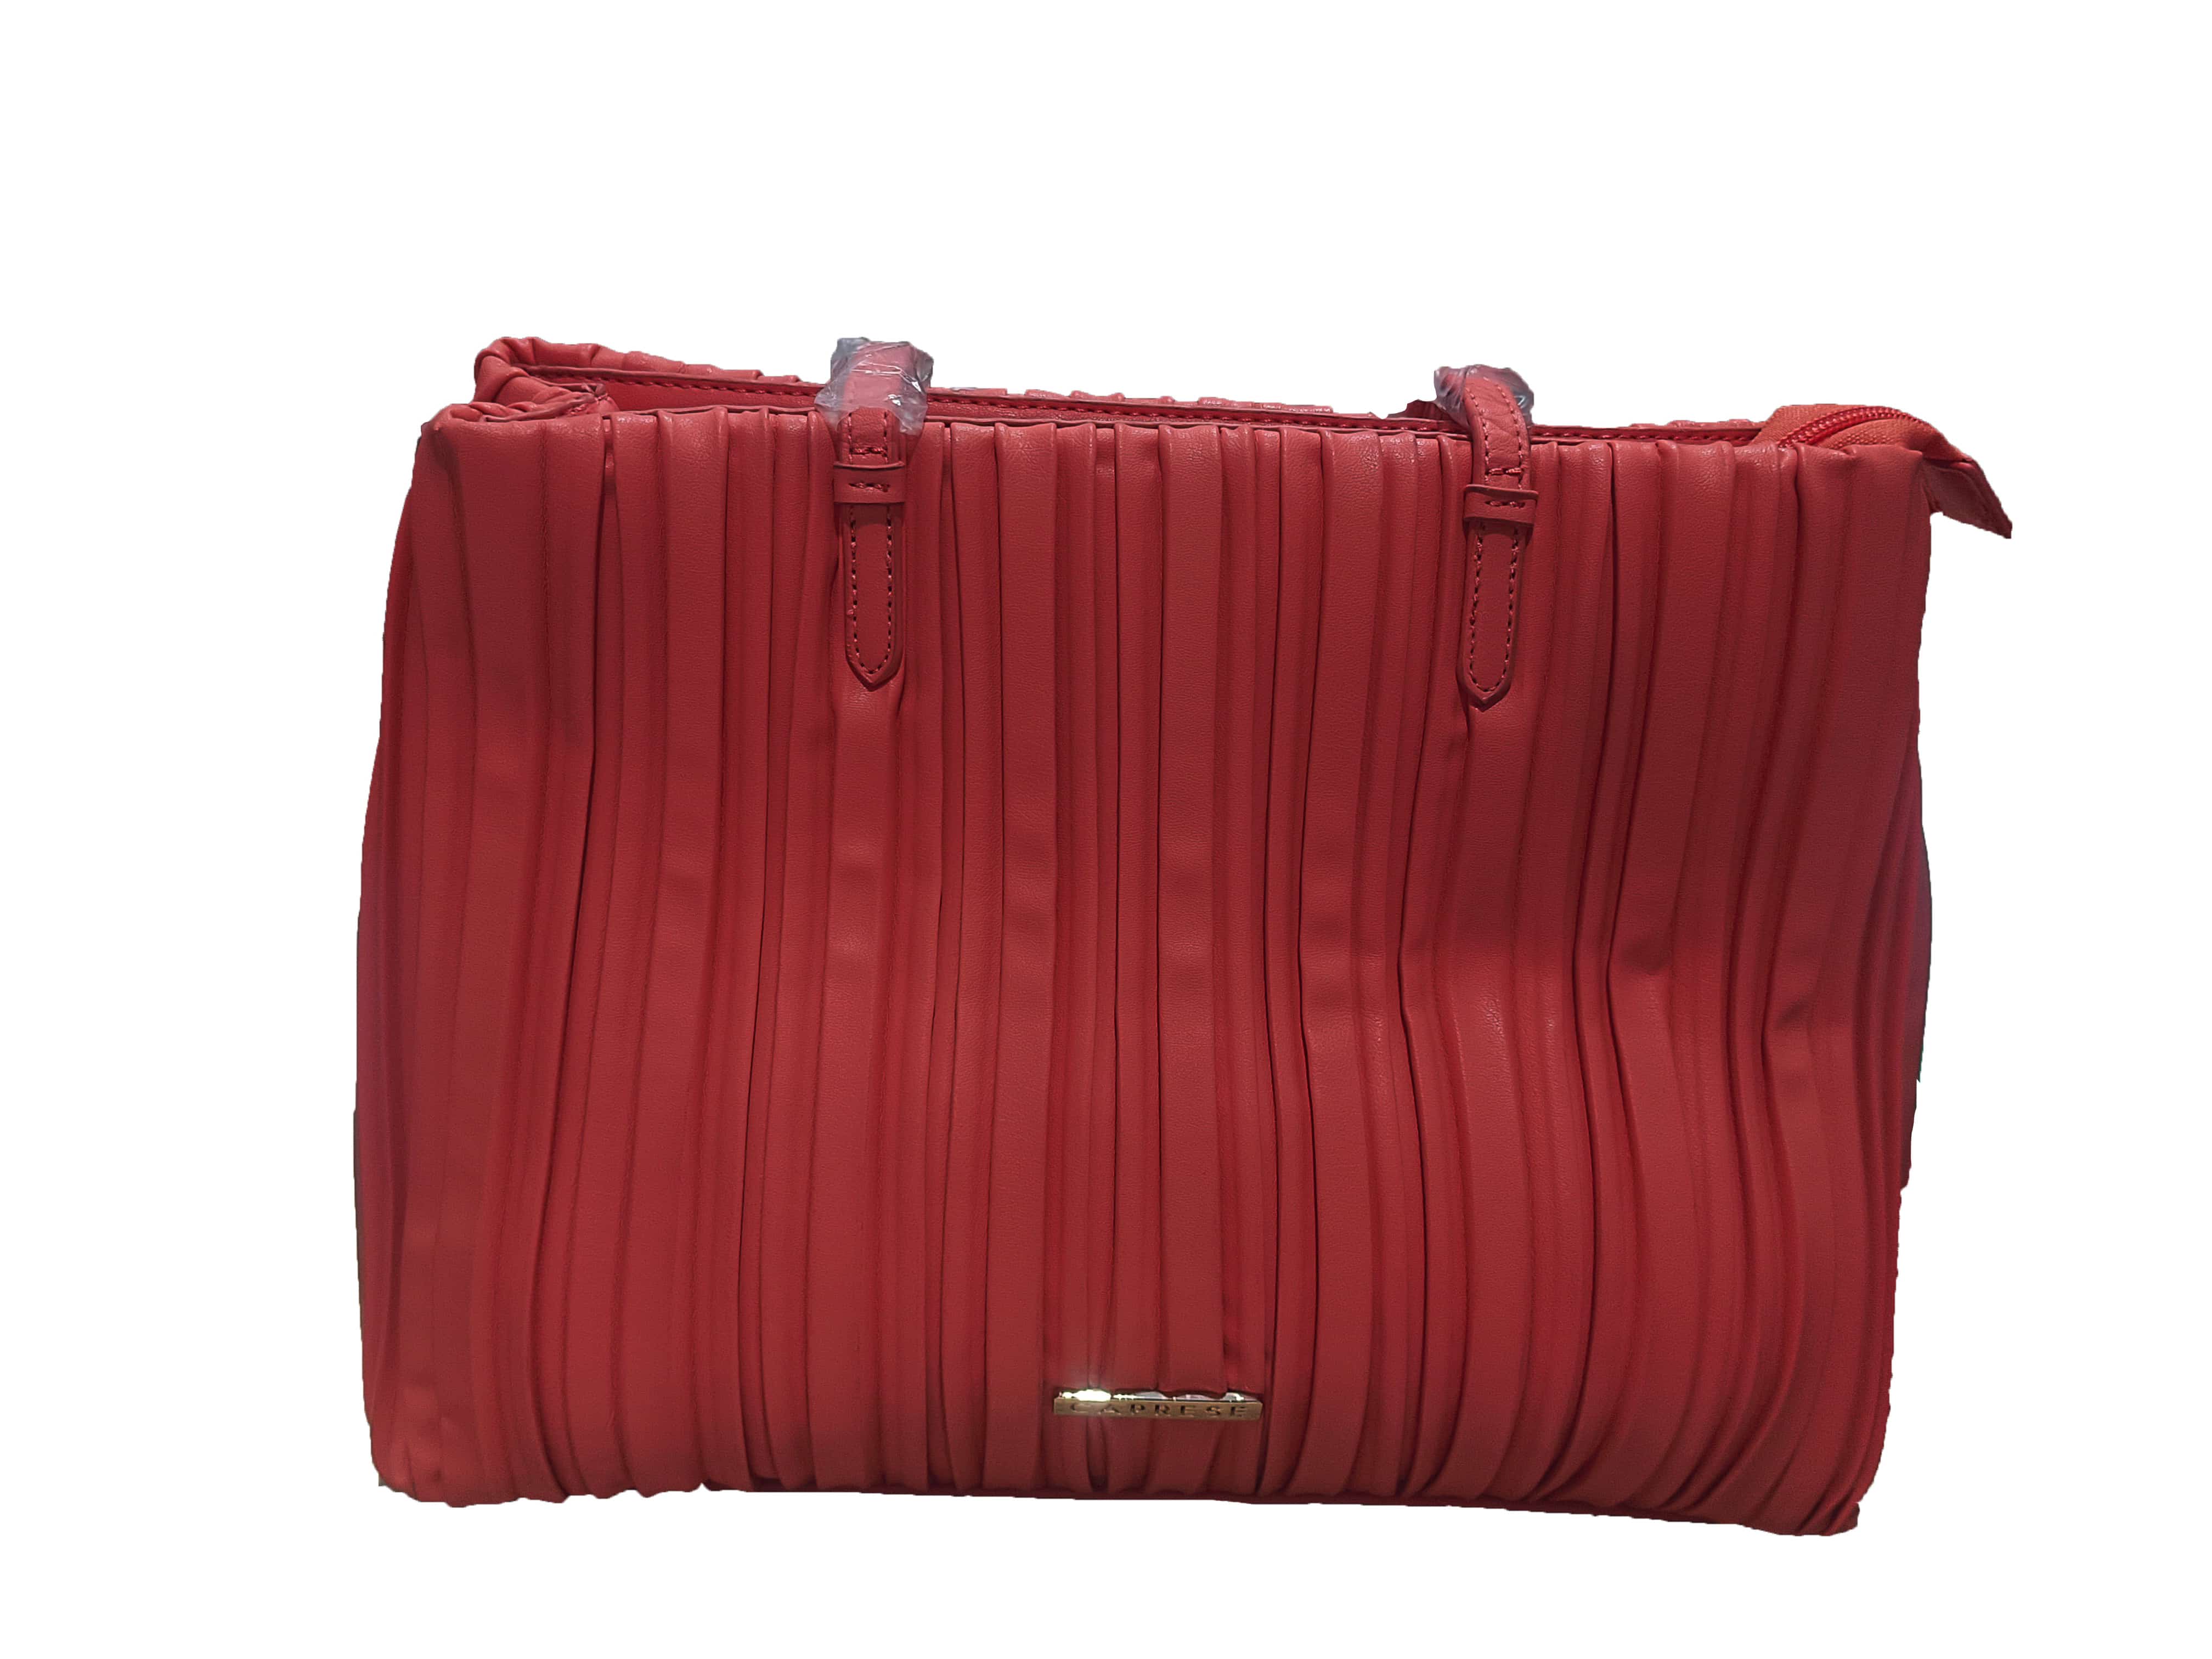 Light red handbag